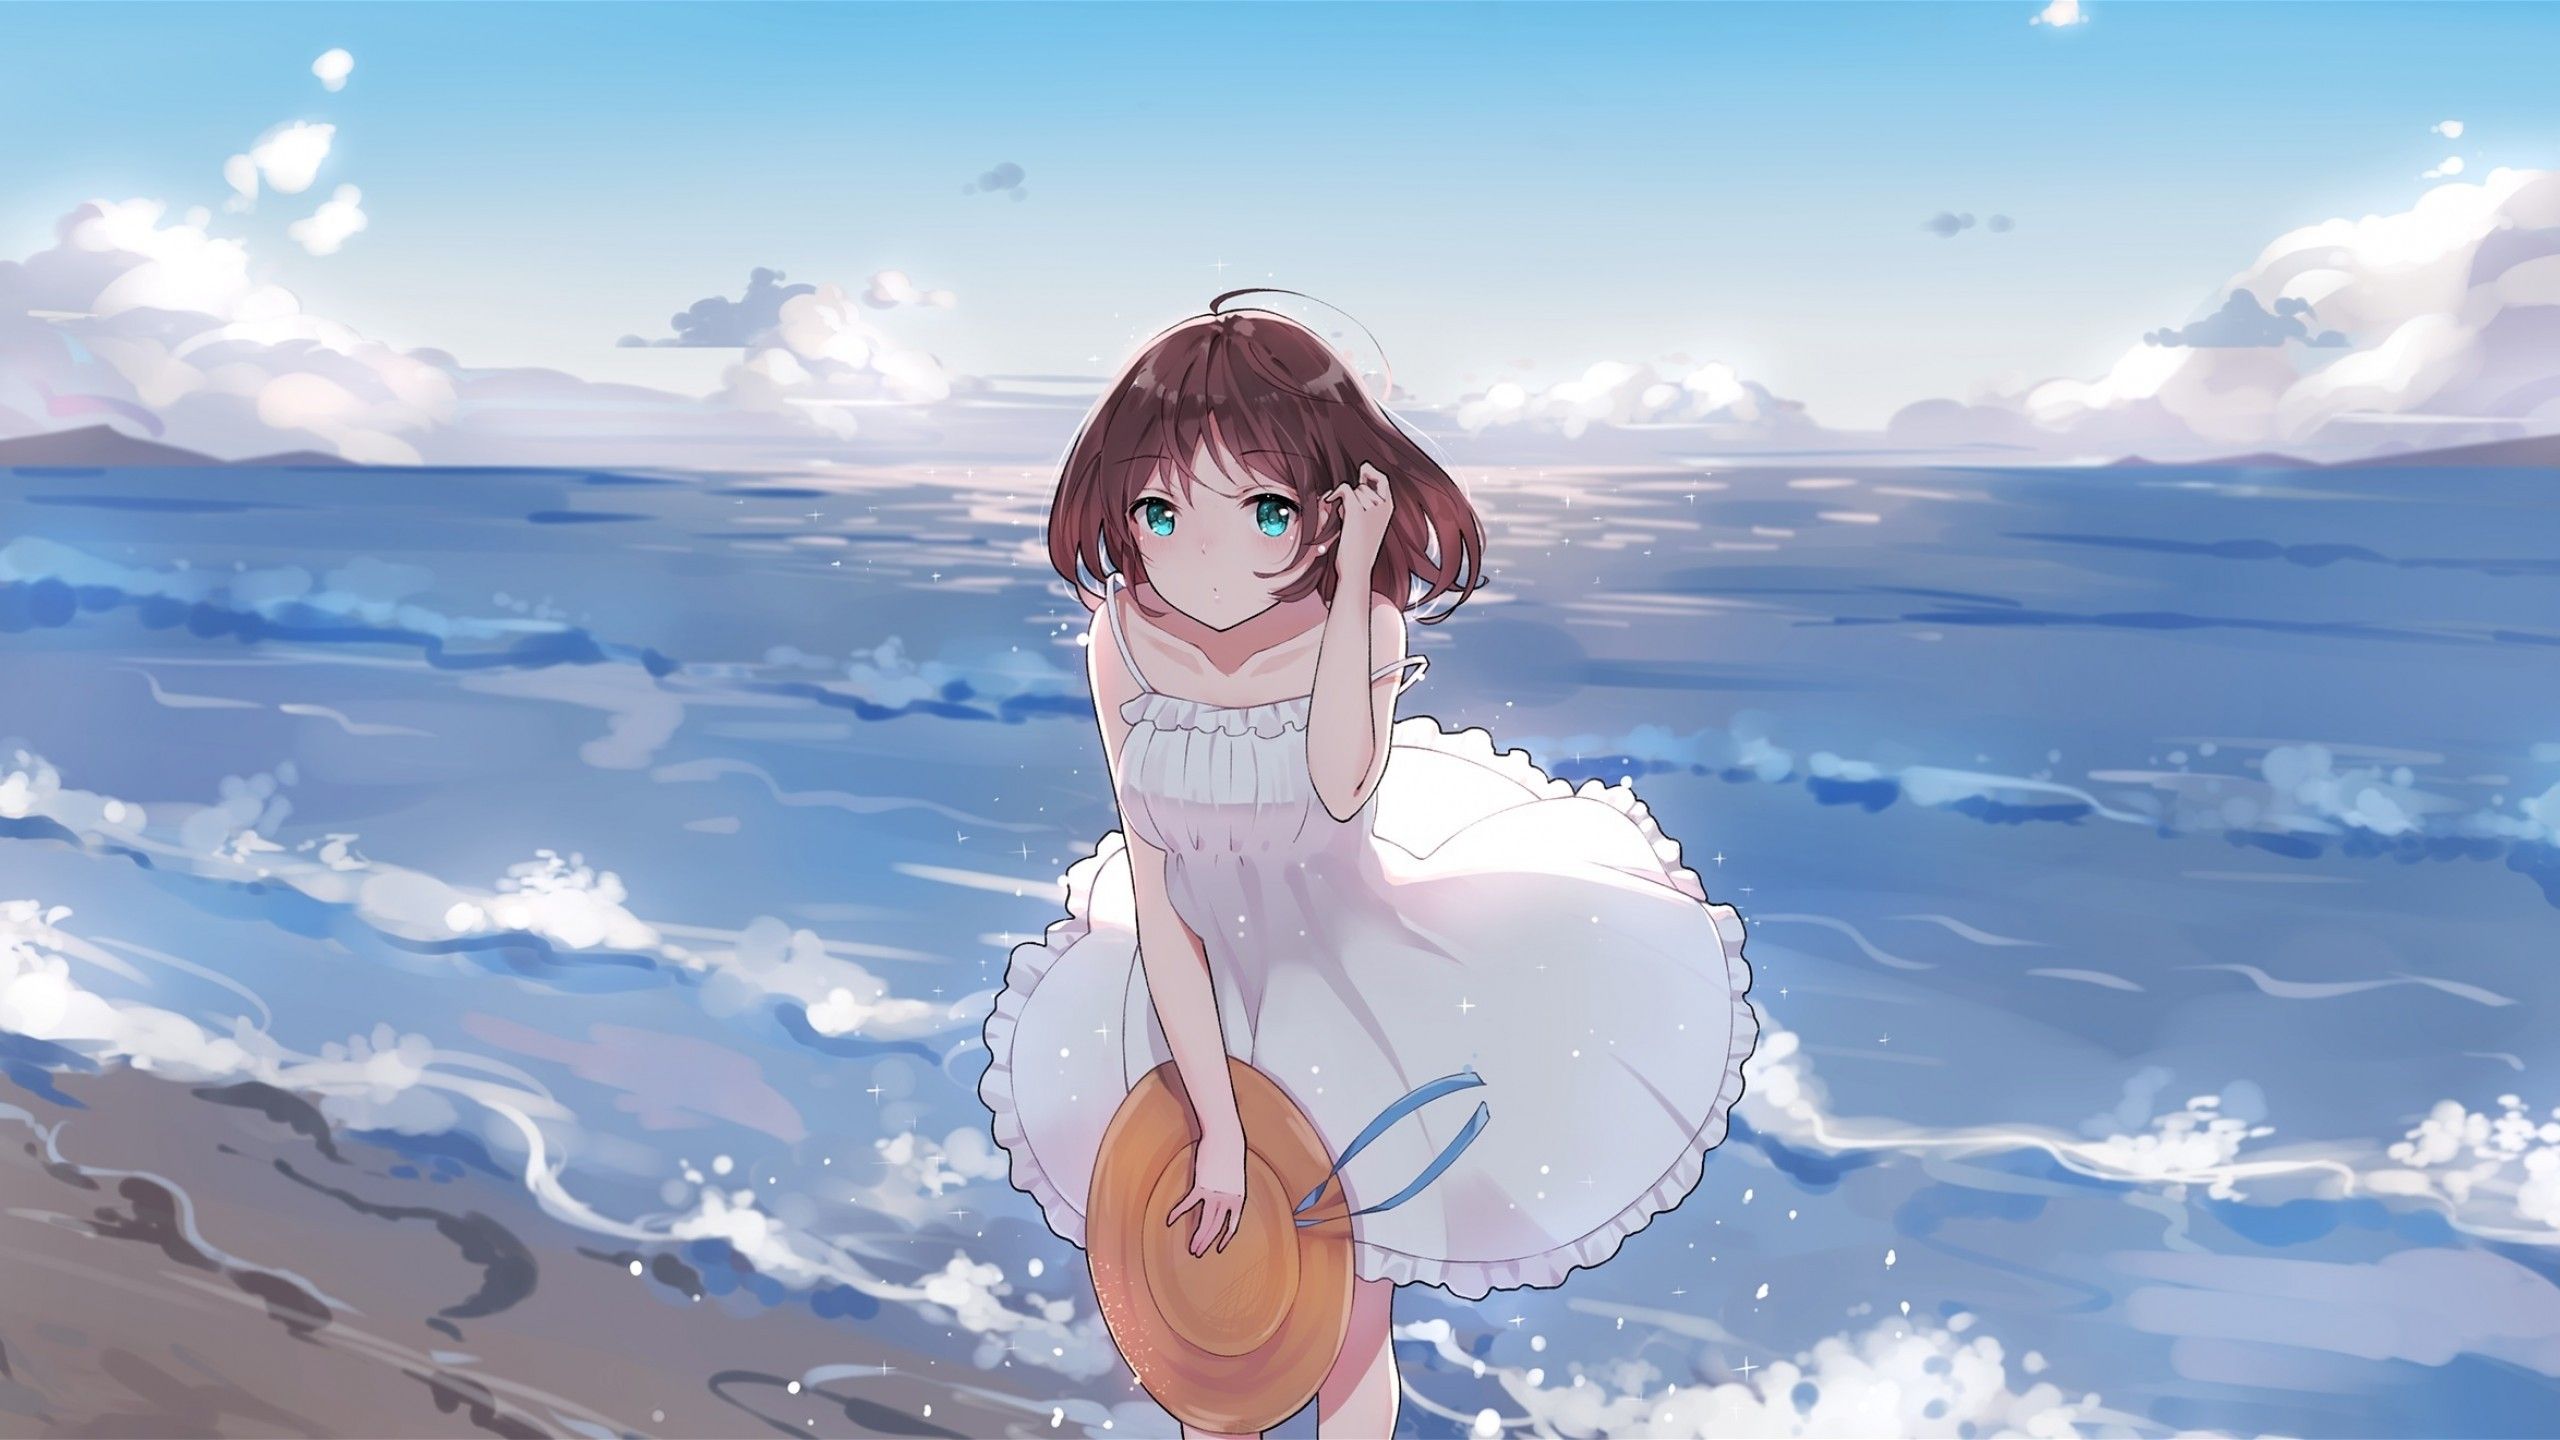 Download 2560x1440 Summer Dress, Anime Girl, Ocean, Waves, Beach